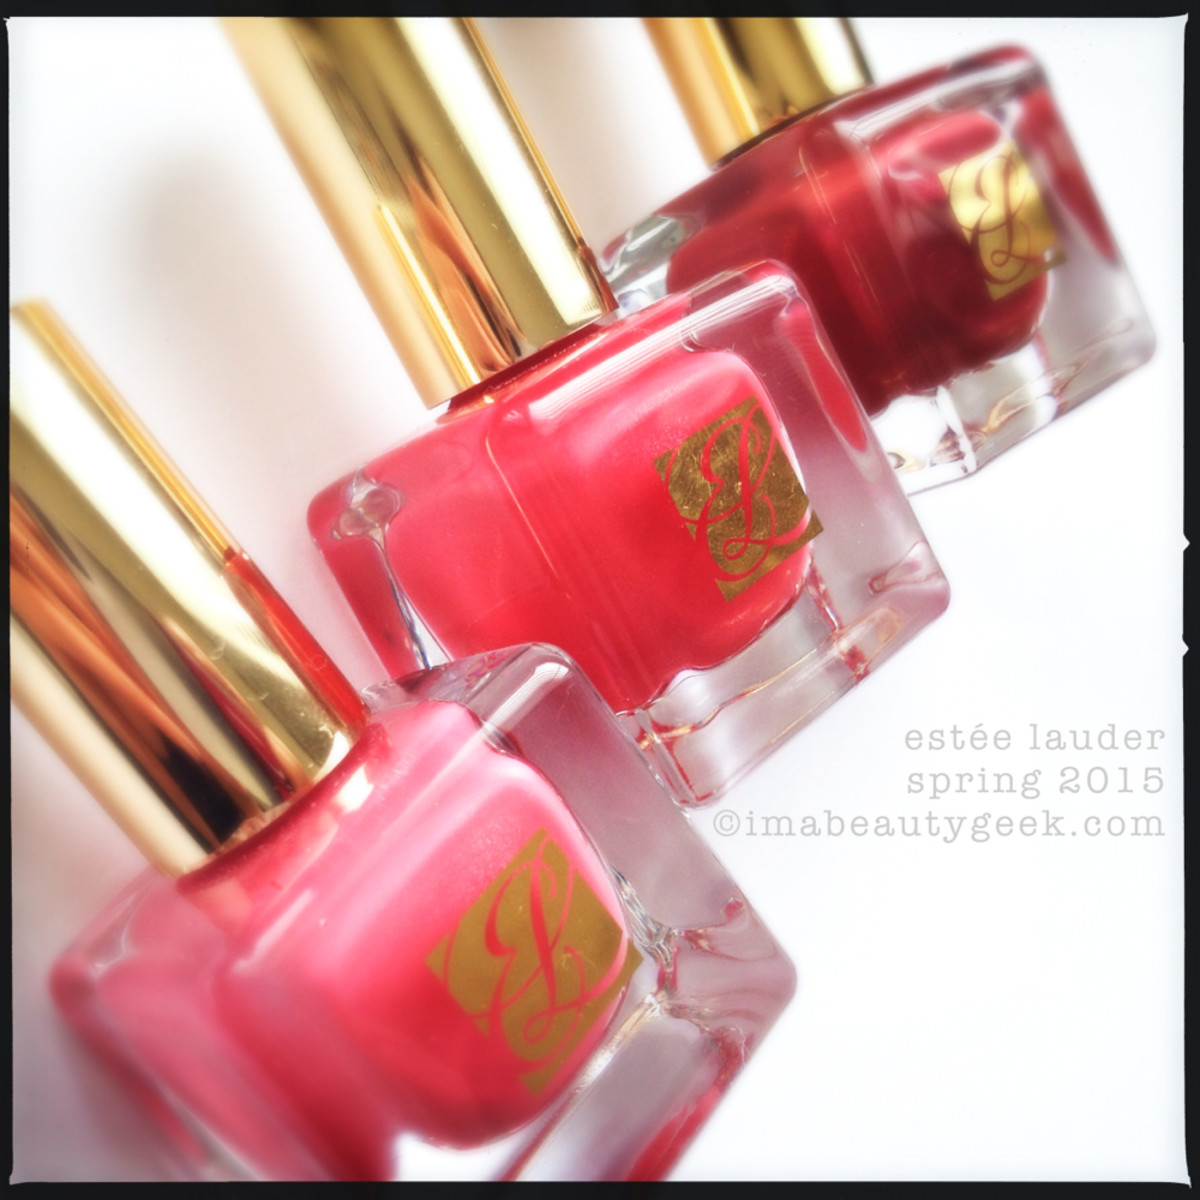 Estee Lauder Spring 2015 Polish Pink Dragon_Inspiring_Blossom Bright